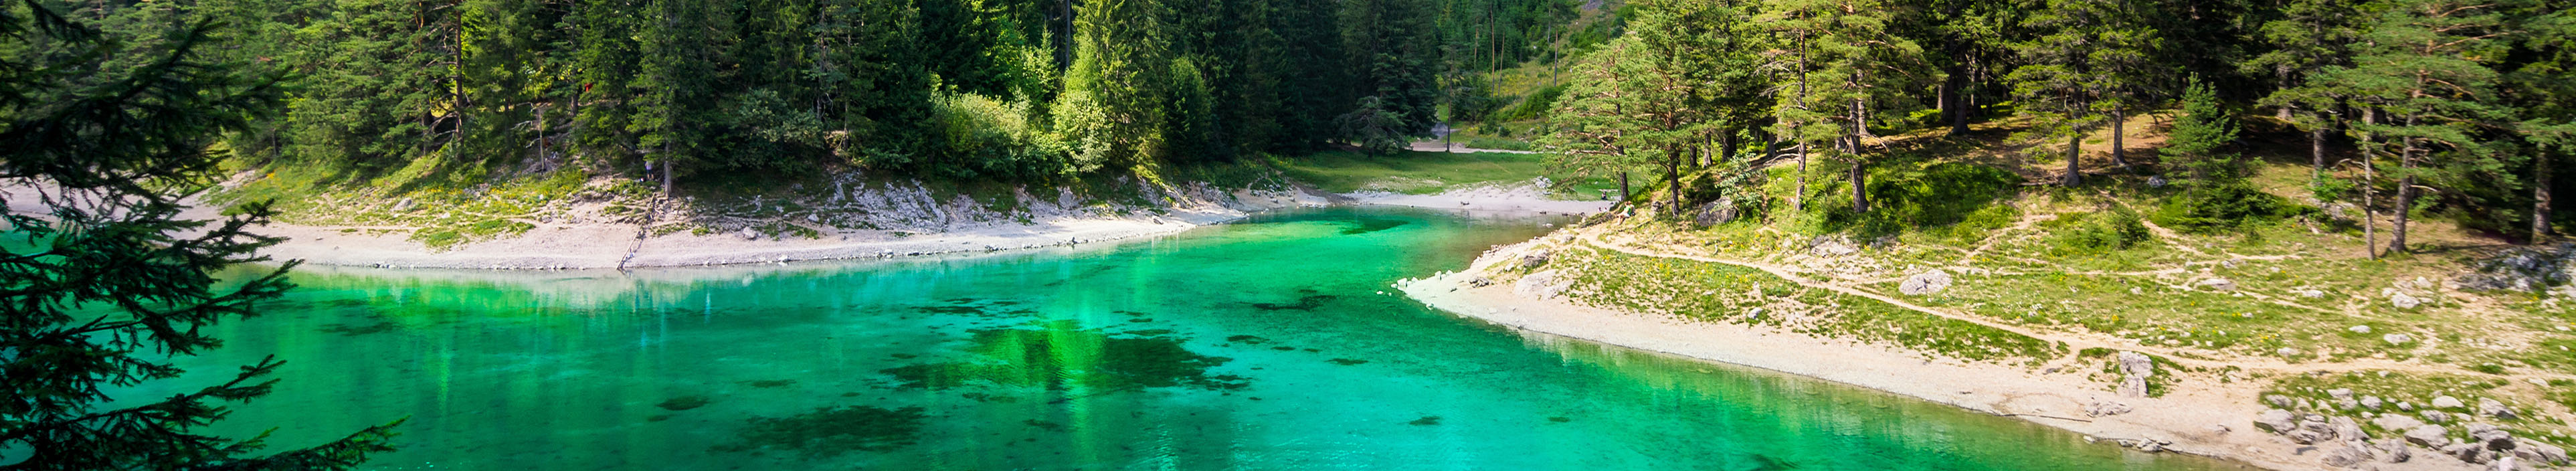 Grüner See in der Steiermark, Österreich